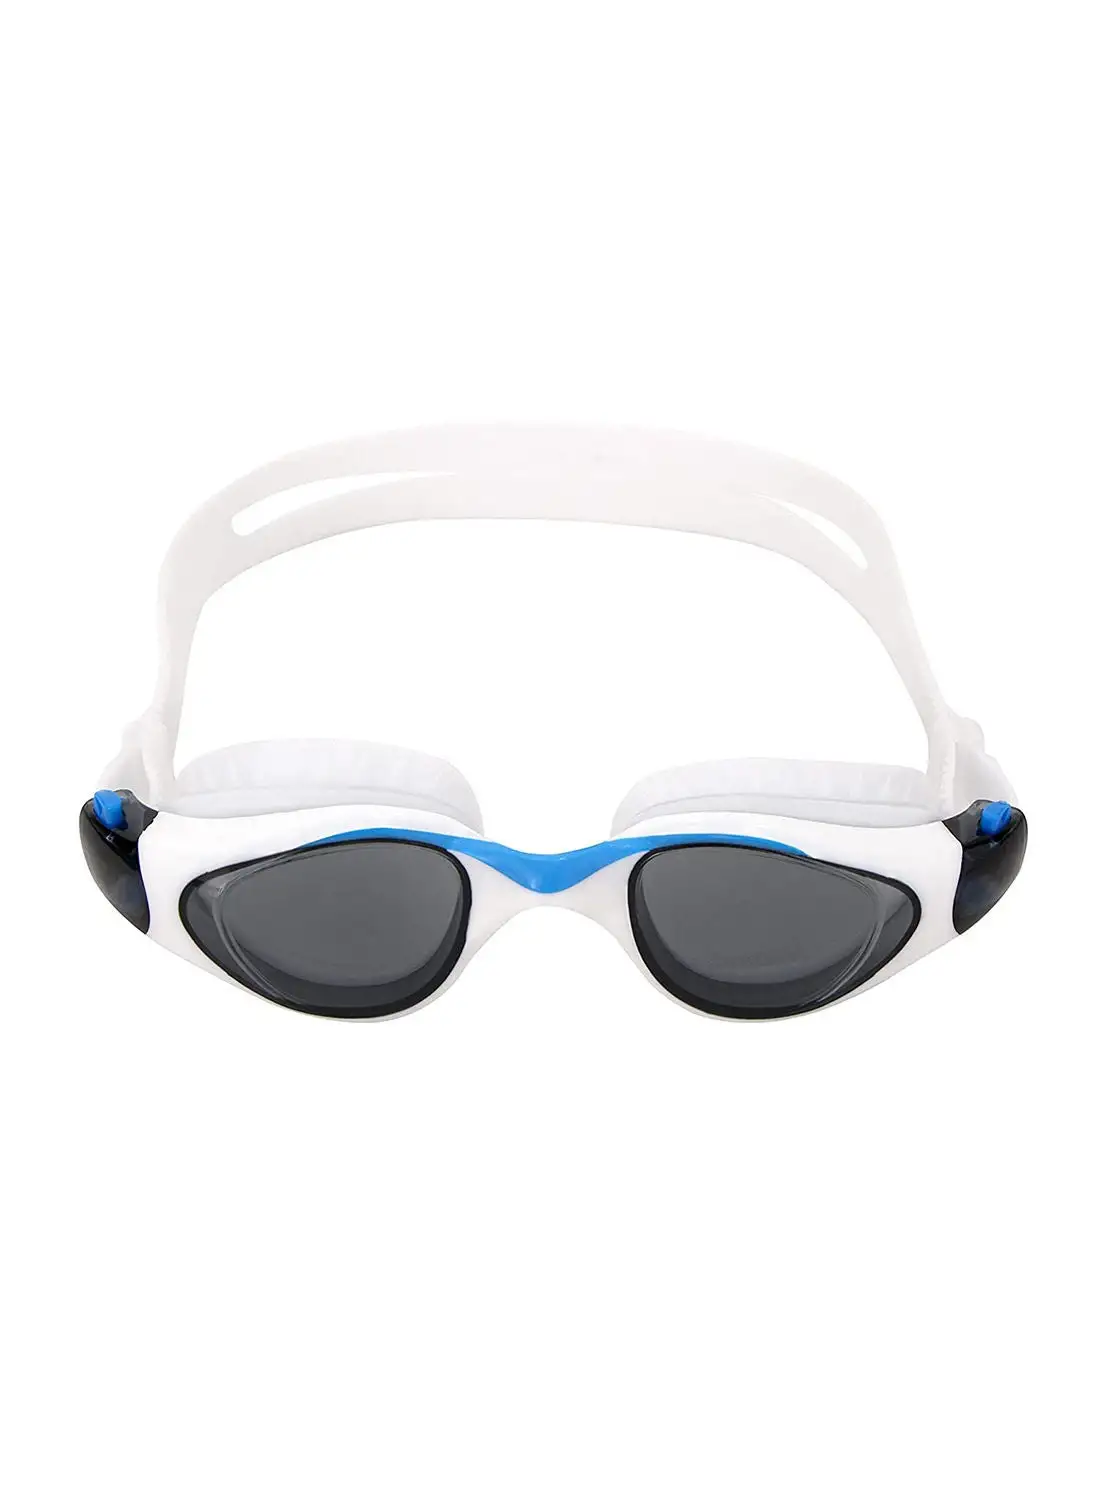 Nivia Unicore Swimming Goggles